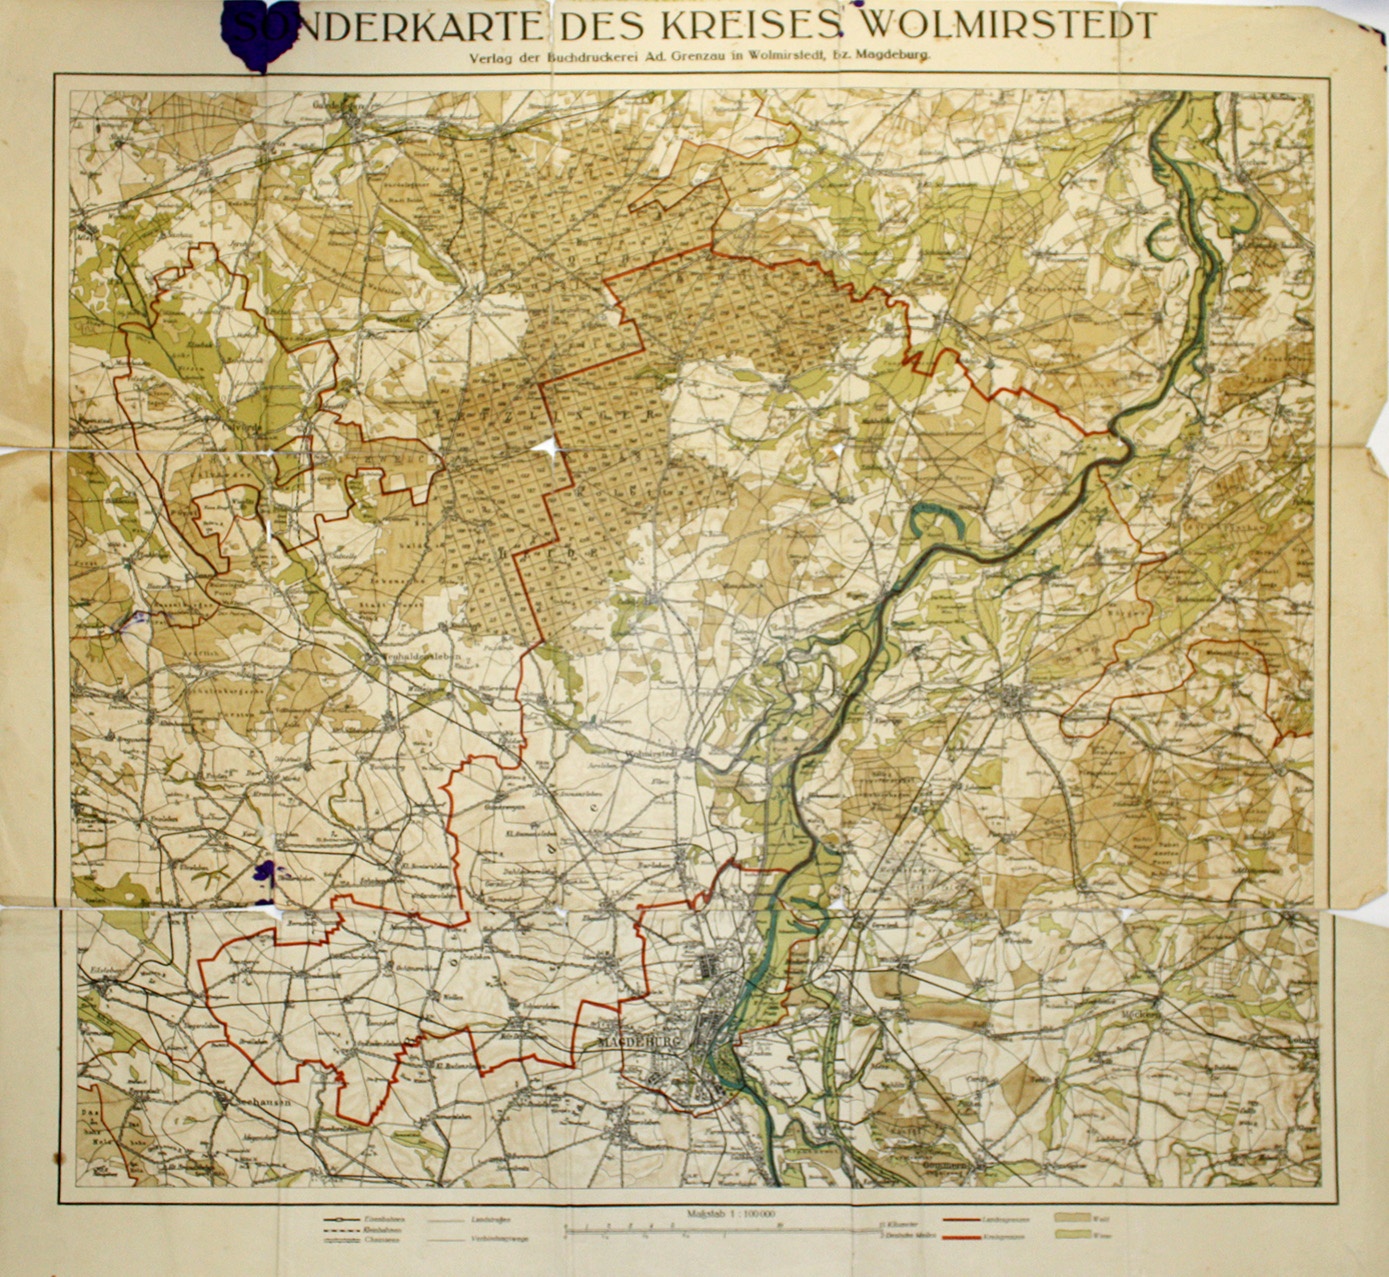 Sonderkarte des Kreises Wolmirstedt [2] (Museum Wolmirstedt RR-F)